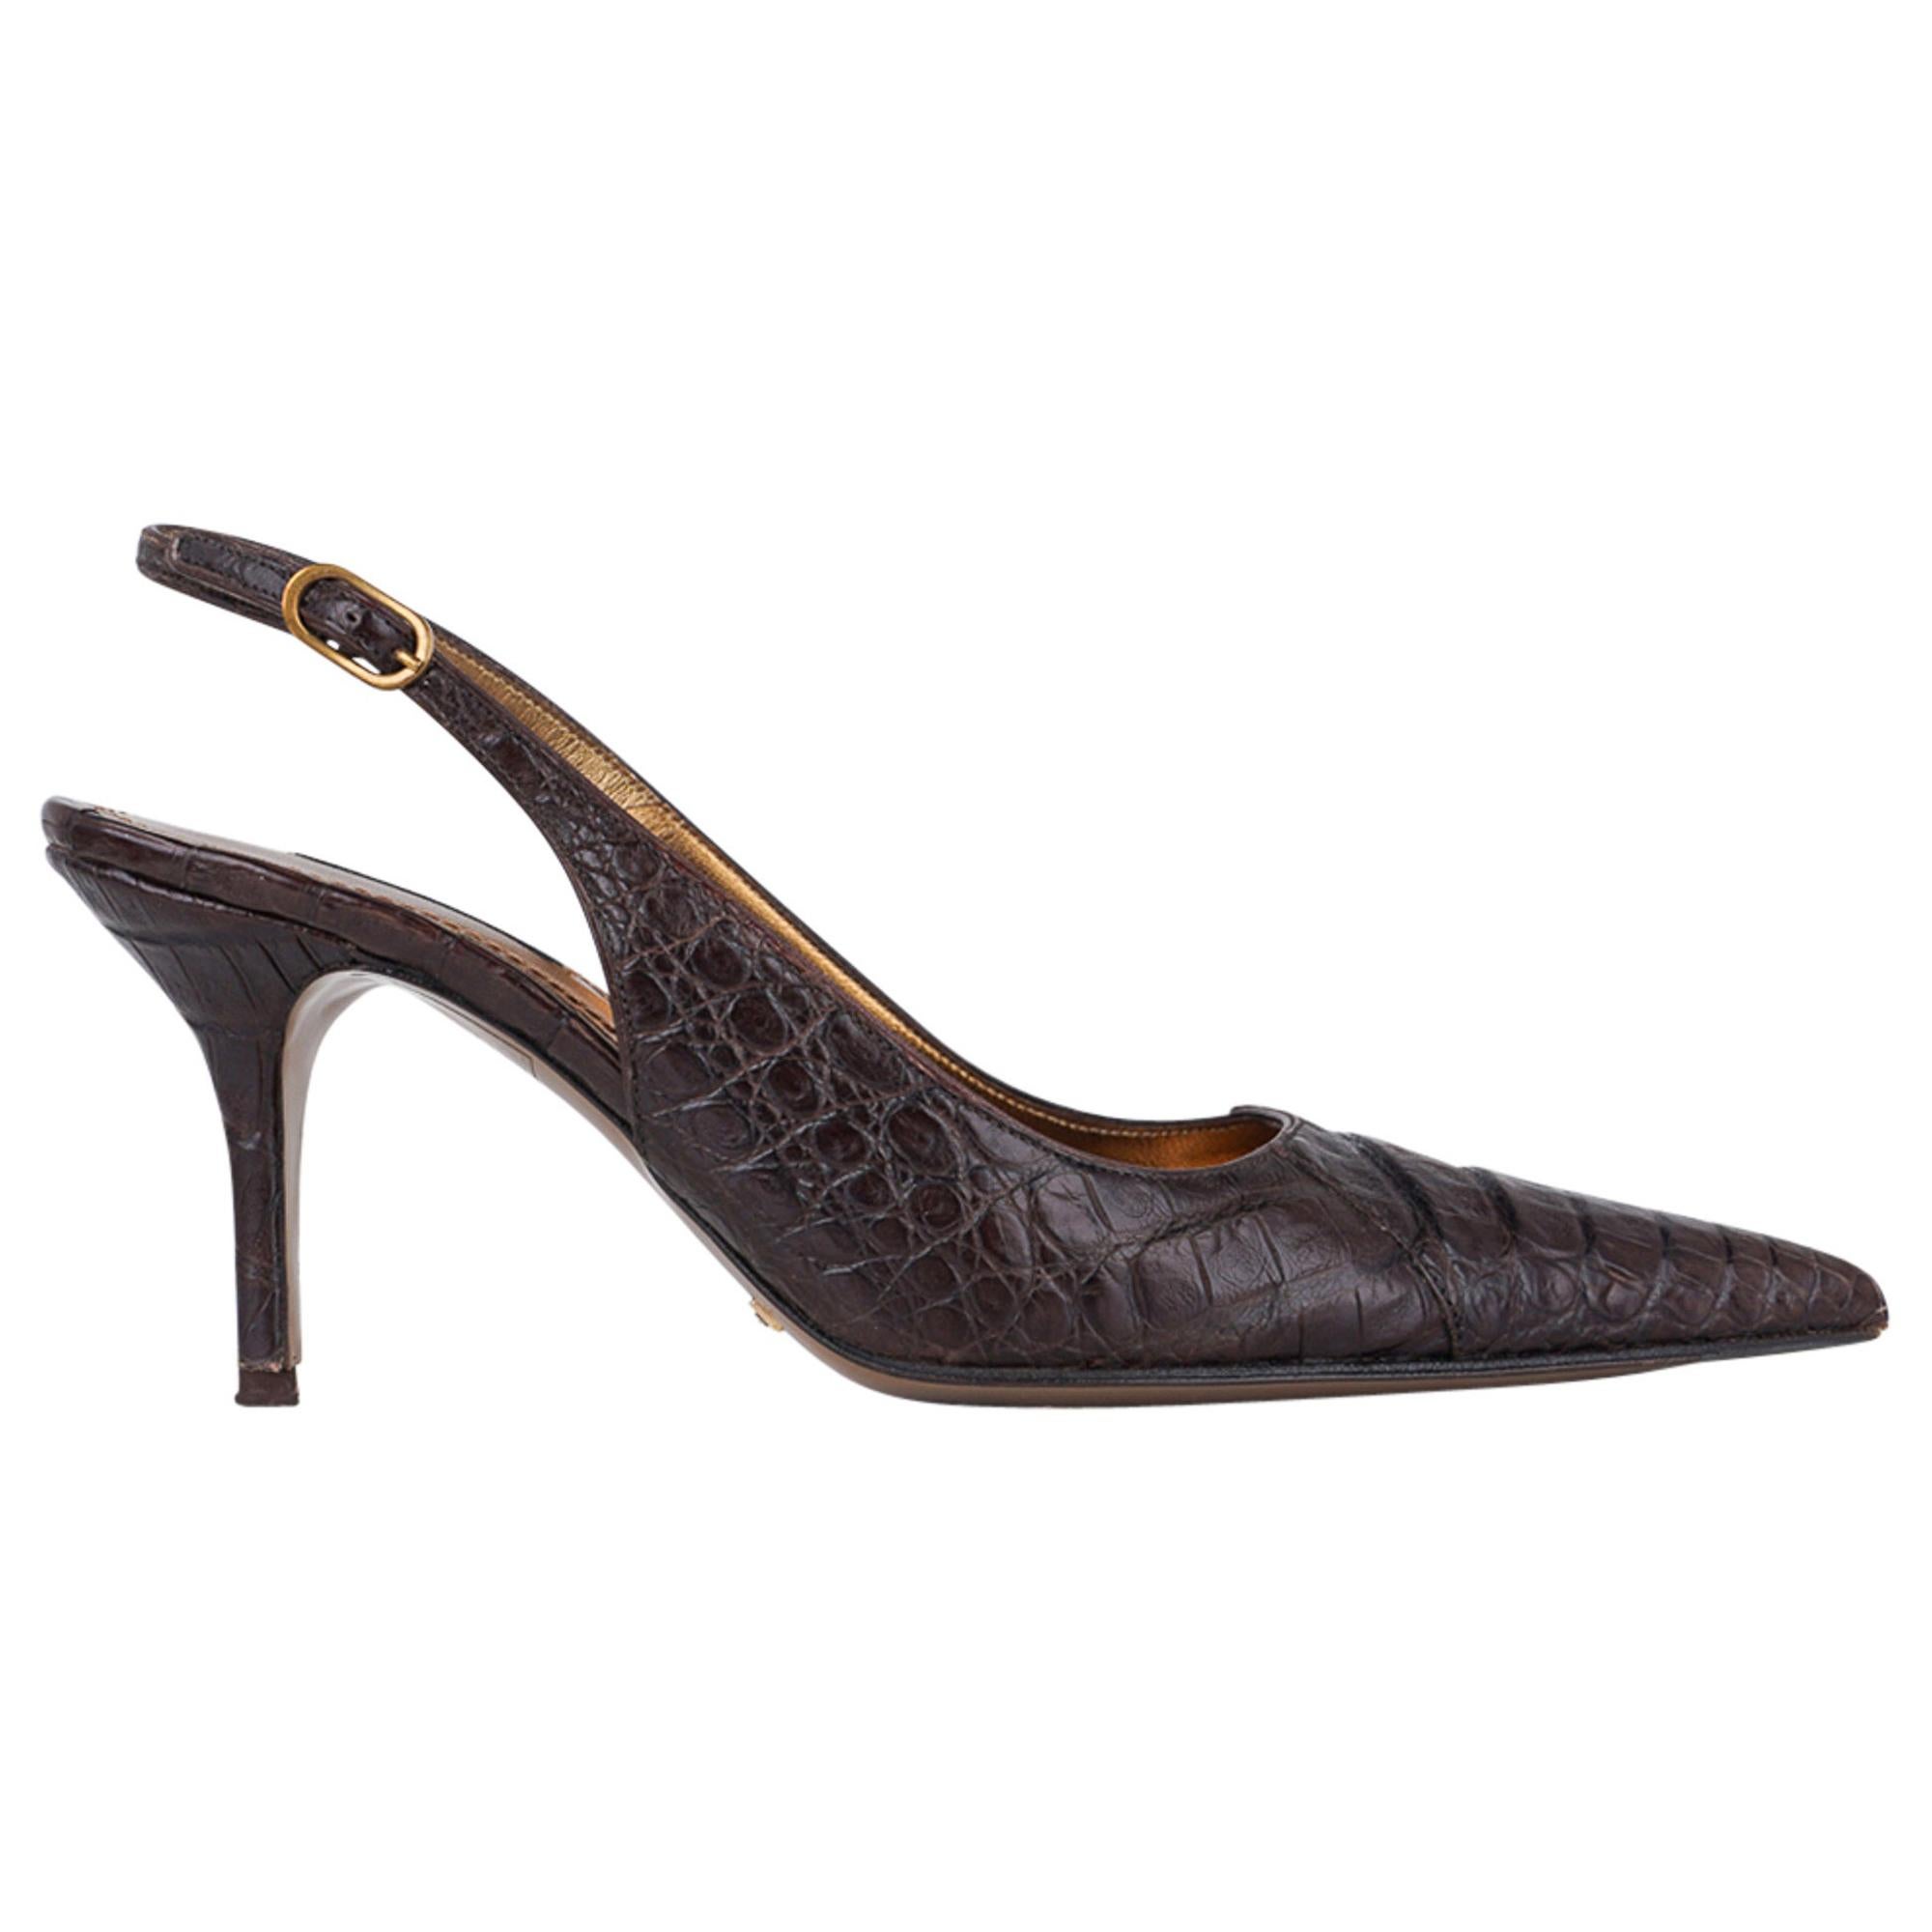 Chaussures Dolce&Gabbana Signature - Sandale Crocodile marron - 40 / 10 - 9 en vente